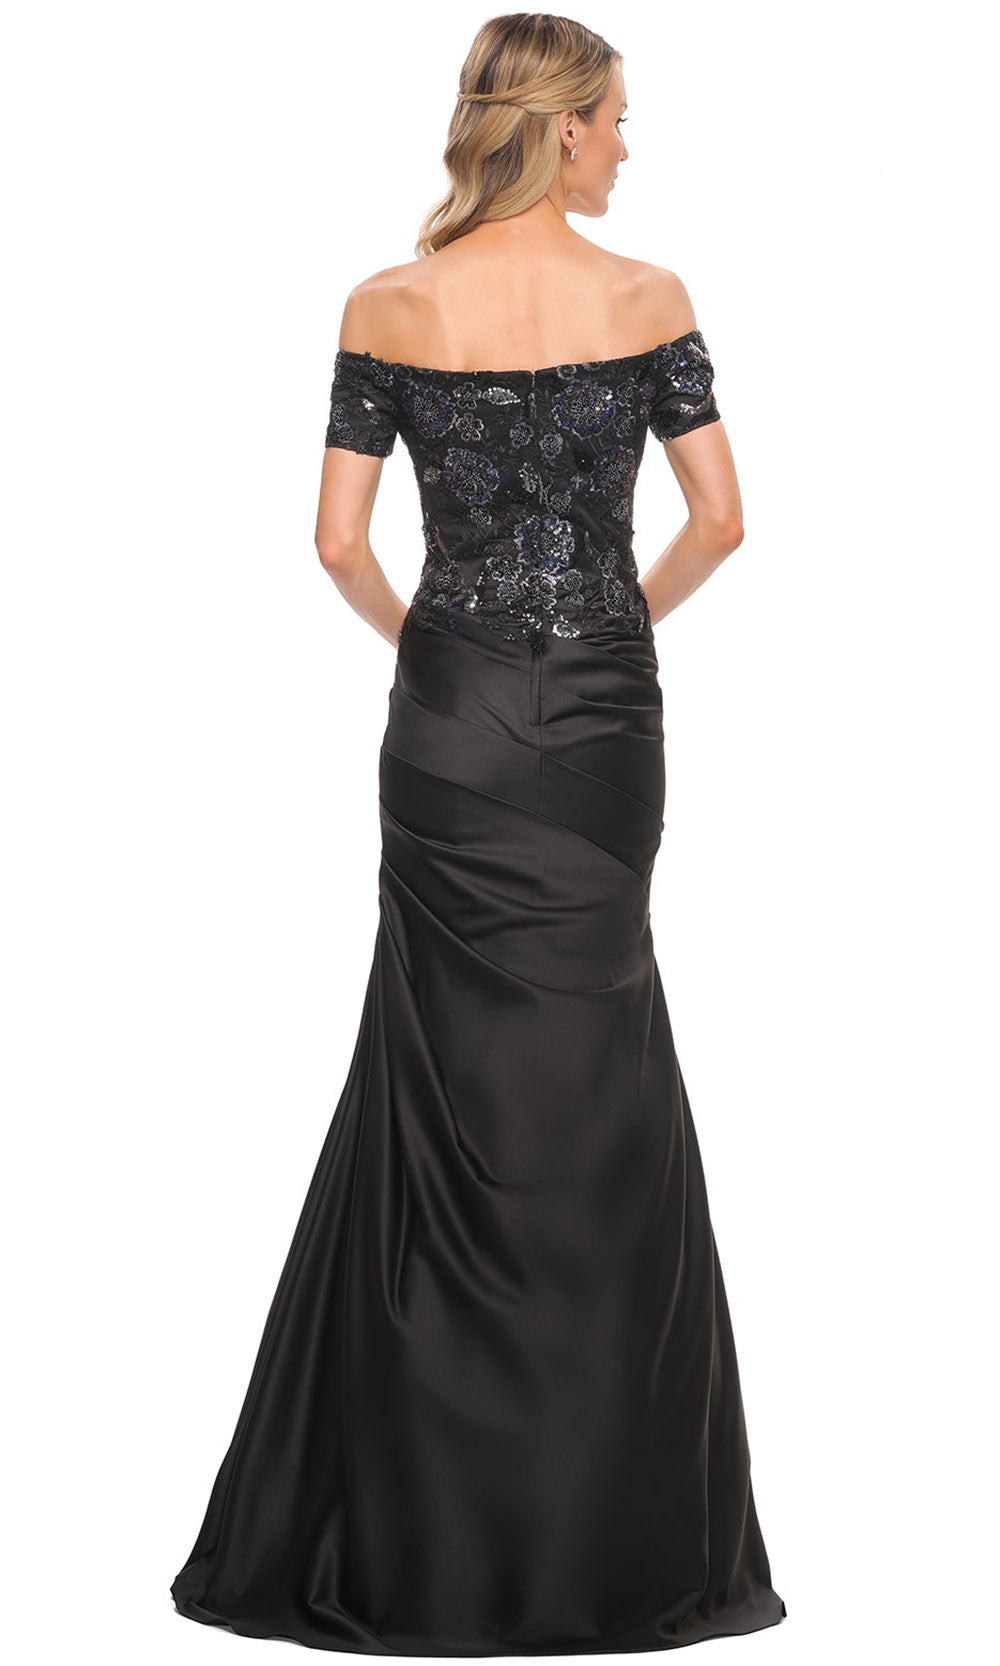 La Femme - 30404 Off-Shoulder Embroidered Trumpet Dress In Black